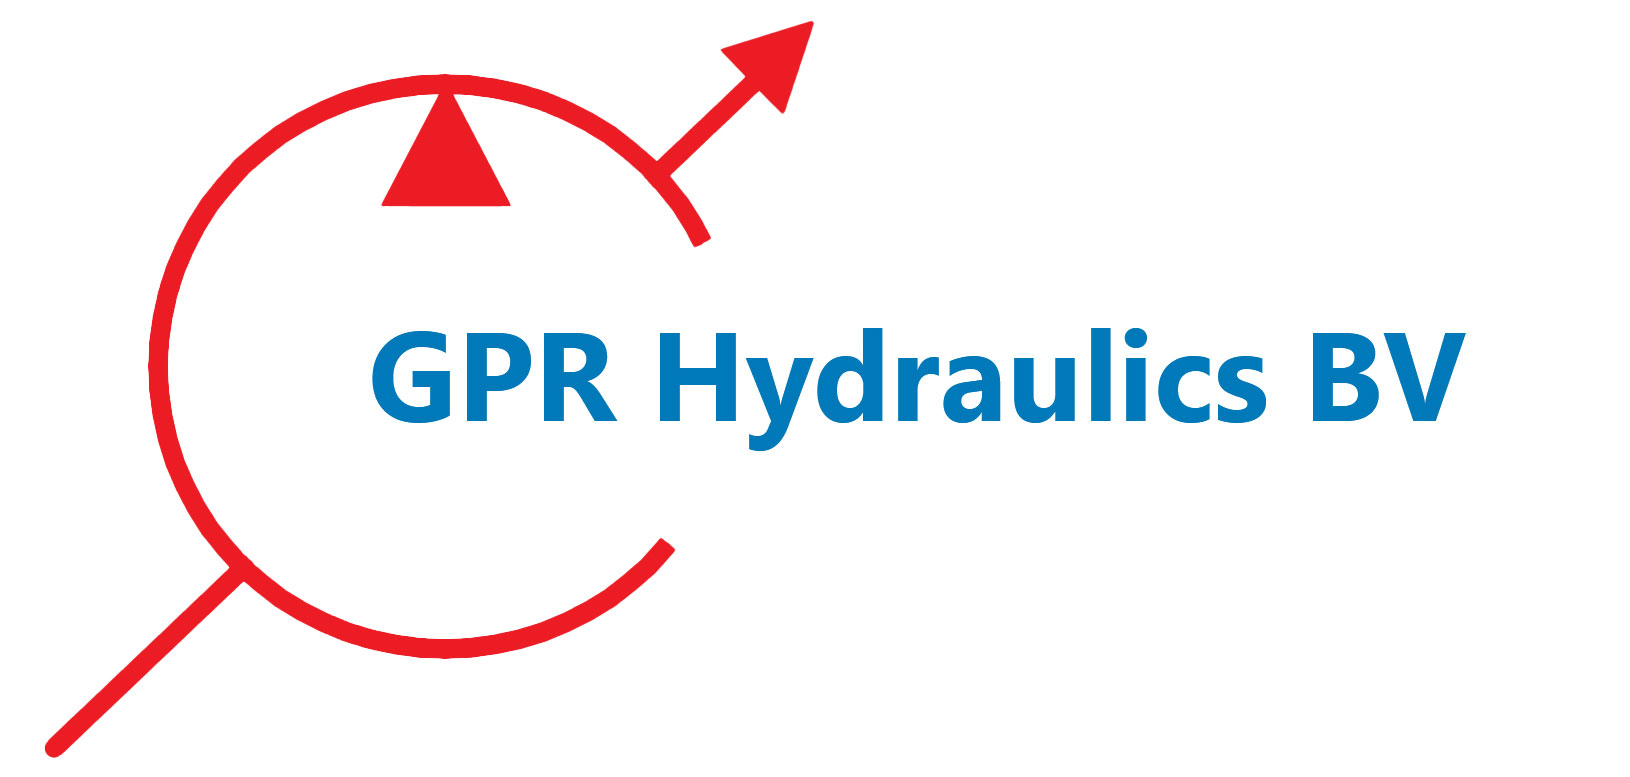 GPR Hydraulics